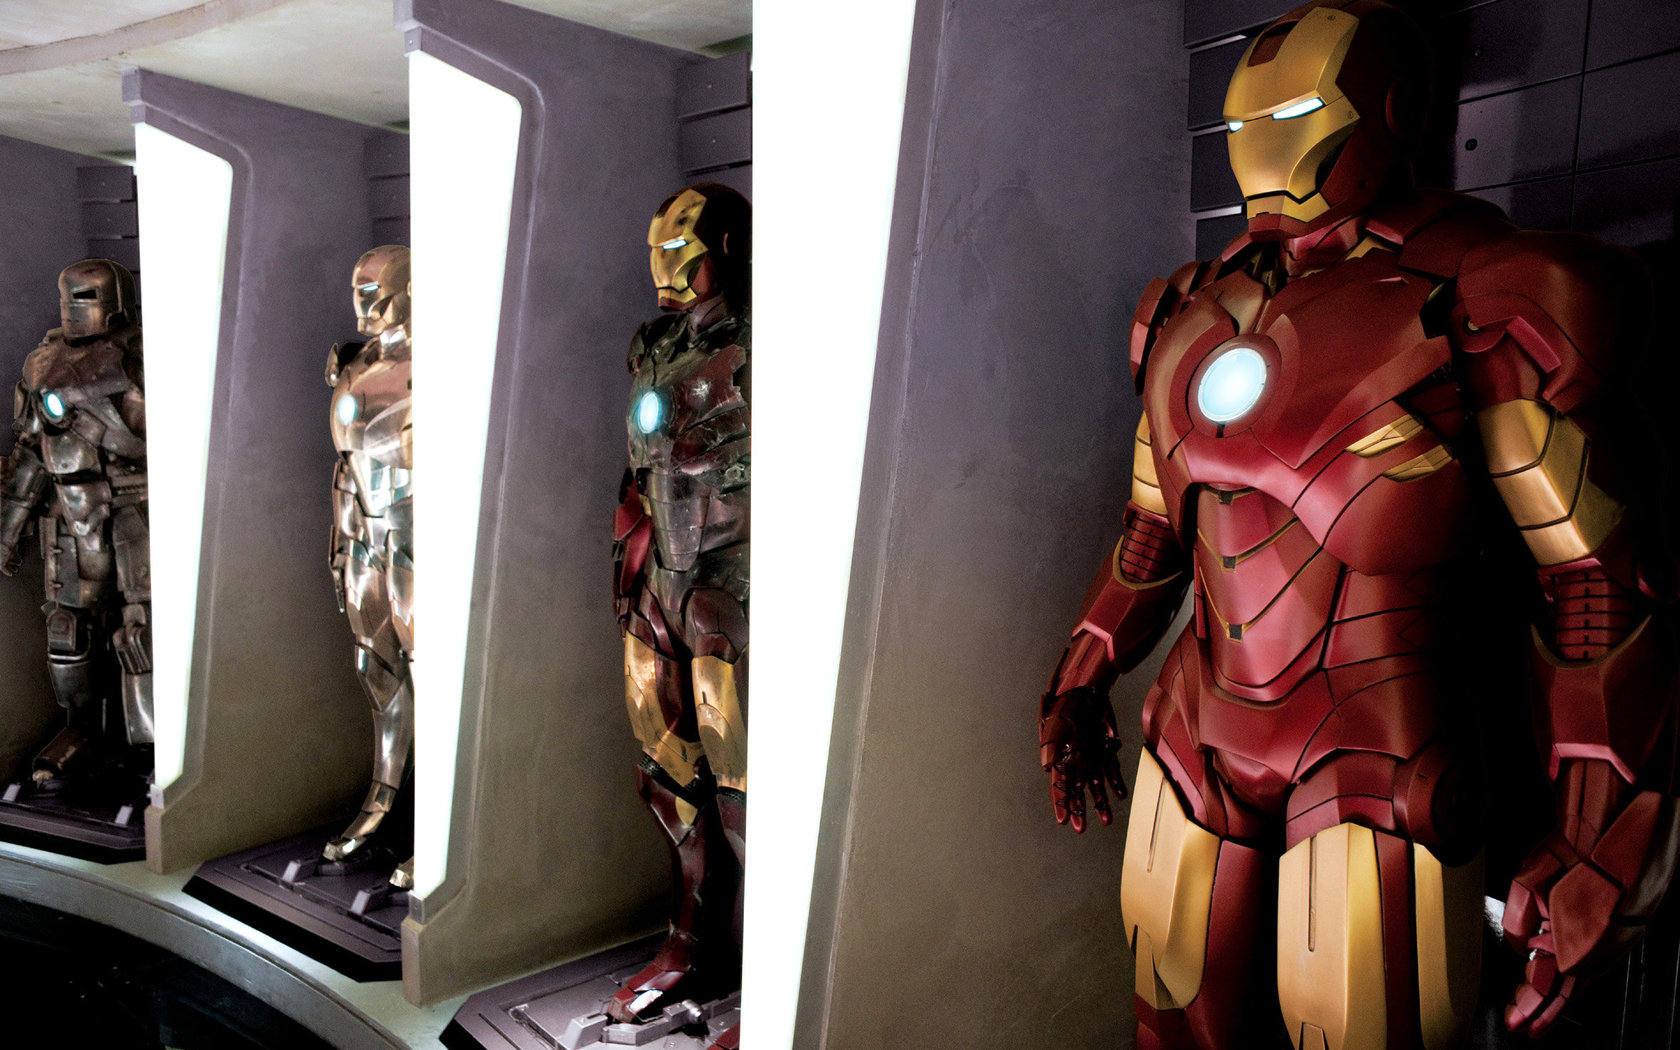 Iron Man Widescreen wallpaper 1680×1050